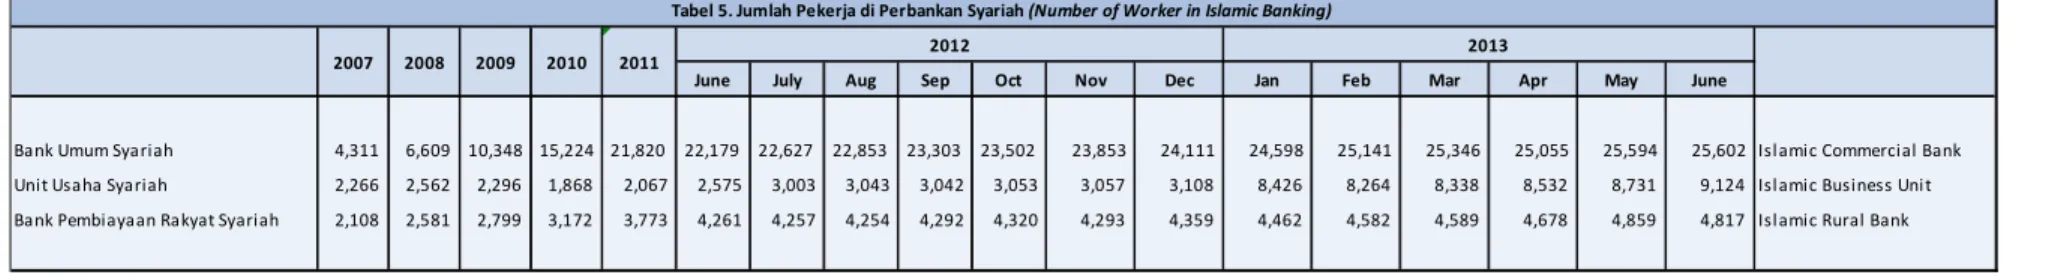 Tabel 5. Jumlah Pekerja di Perbankan Syariah (Number of Worker in Islamic Banking)